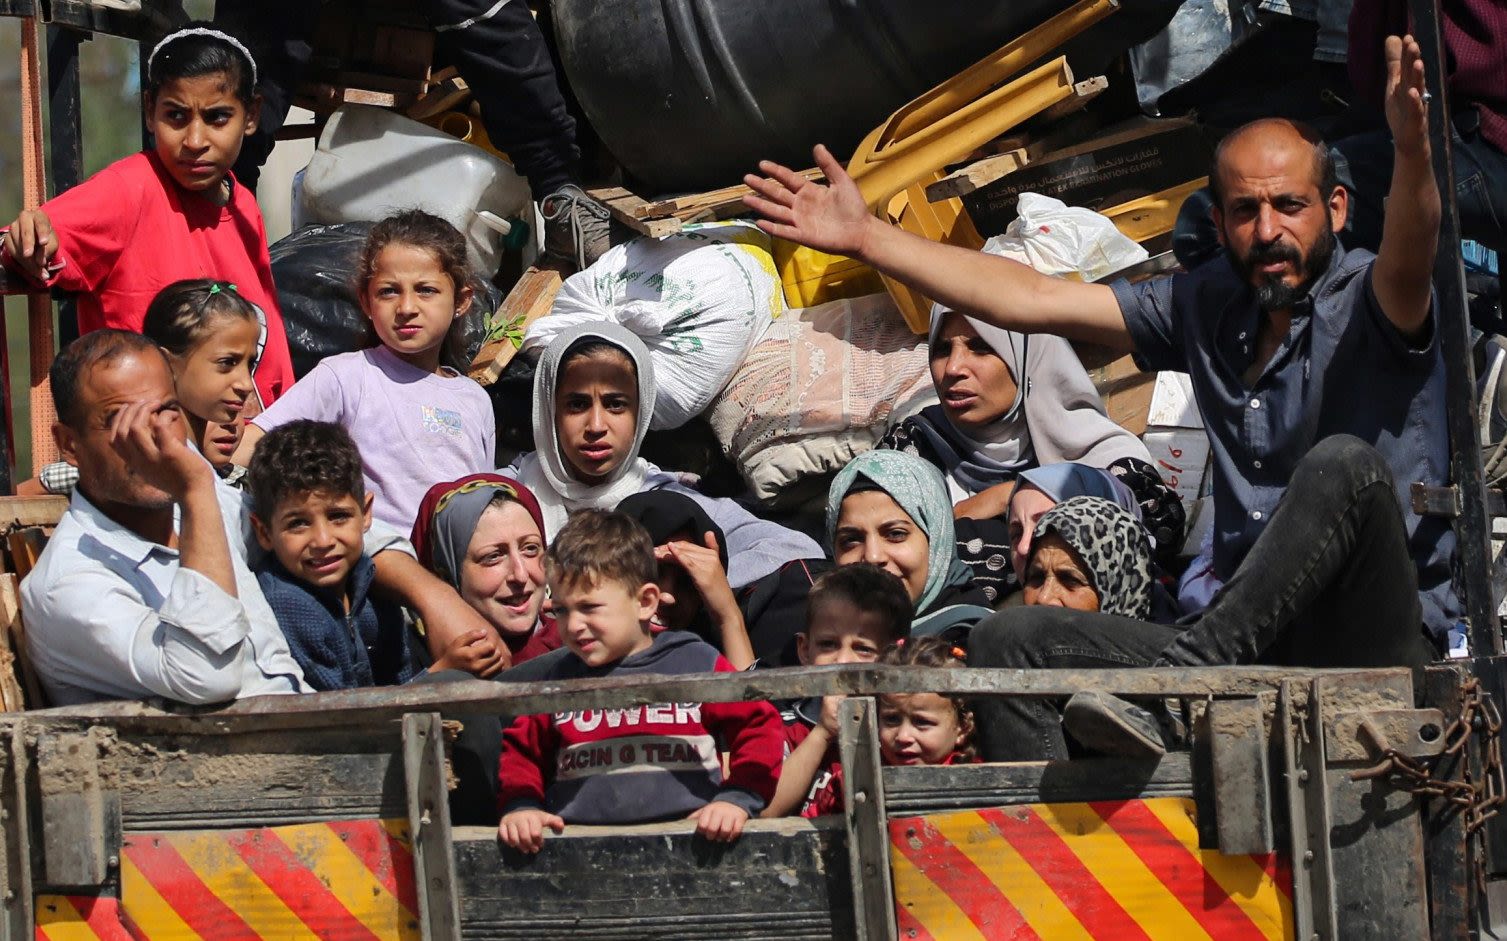 Israel cuts off Hamas ‘lifeline’ by seizing Gaza side of Rafah crossing